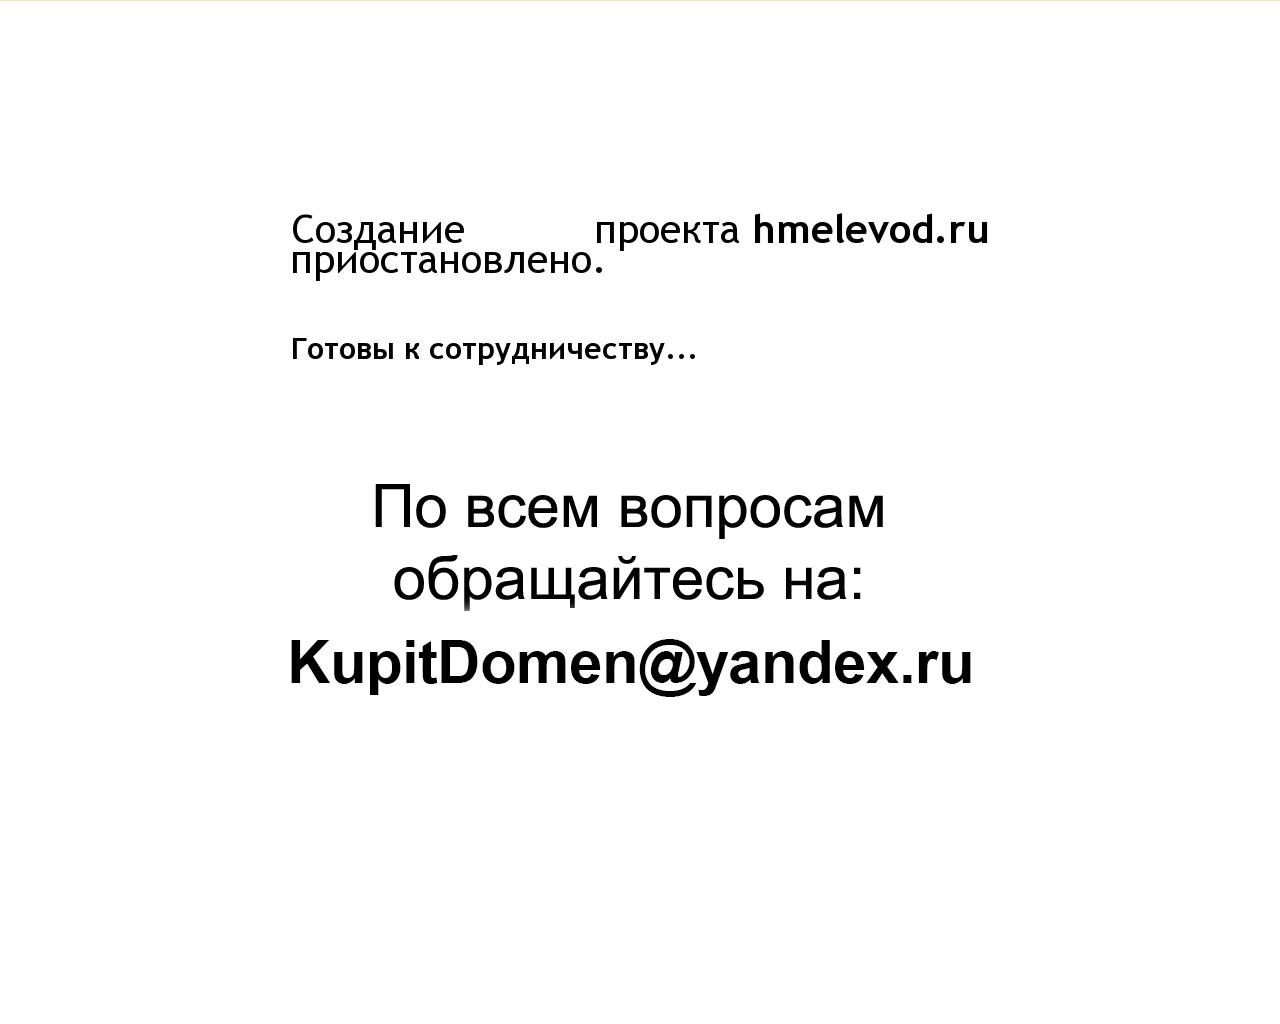 Изображение сайта hmelevod.ru в разрешении 1280x1024